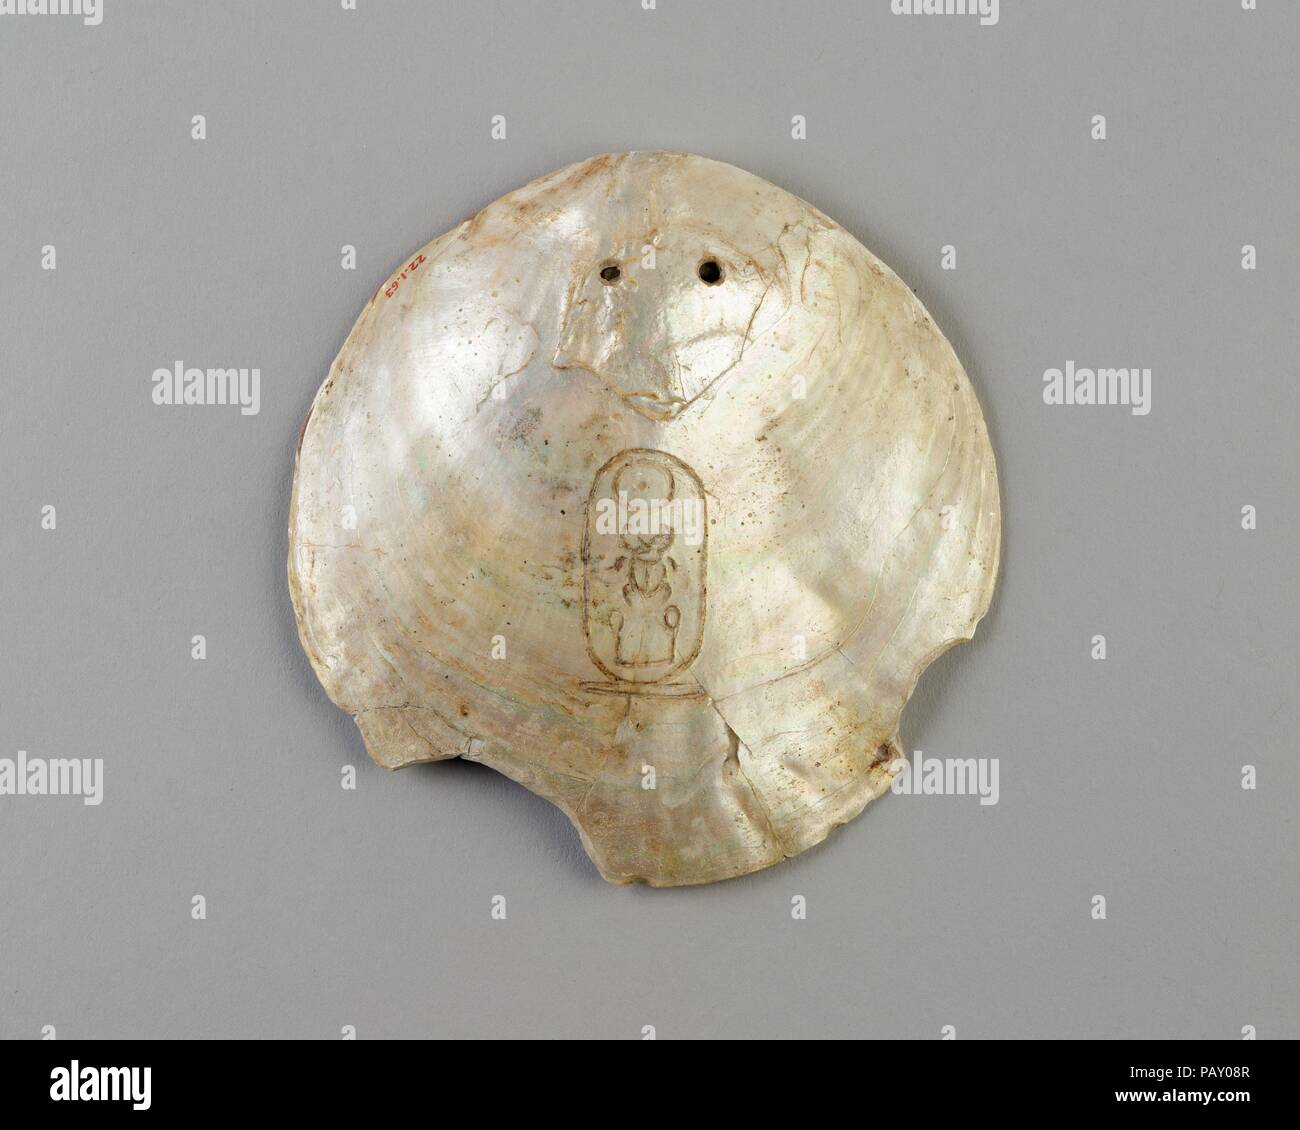 Shell bezeichnet mit der Kartusche des Senwosret I. Abmessungen: L 12,5 × W. 12 cm (4 15/16 x 4 3/4 in.). Dynastie: Dynasty 12. Herrschaft: Herrschaft des Senwosret I. oder später. Datum: Ca. 1961-1917 v. Chr. oder später. Poliert bis in die innere Schicht von Perlmutt (Perlmutt), diese Irisierenden Oyster Shell wurde mit zwei Löchern durchbohrt, so dass es könnte aufgereiht und hing um den Hals. Die königlichen Namen Senwosret hat in die Oberfläche eingeschnitten worden. Es ist eine von etwa fünfzig solcher bekannten Shells, die meisten eingeschrieben, wie in diesem Beispiel, mit dem Nomen (Geburtsname) Senwosret, oder mit dem Namen prenomen (Thron) Kheperkare. Stockfoto